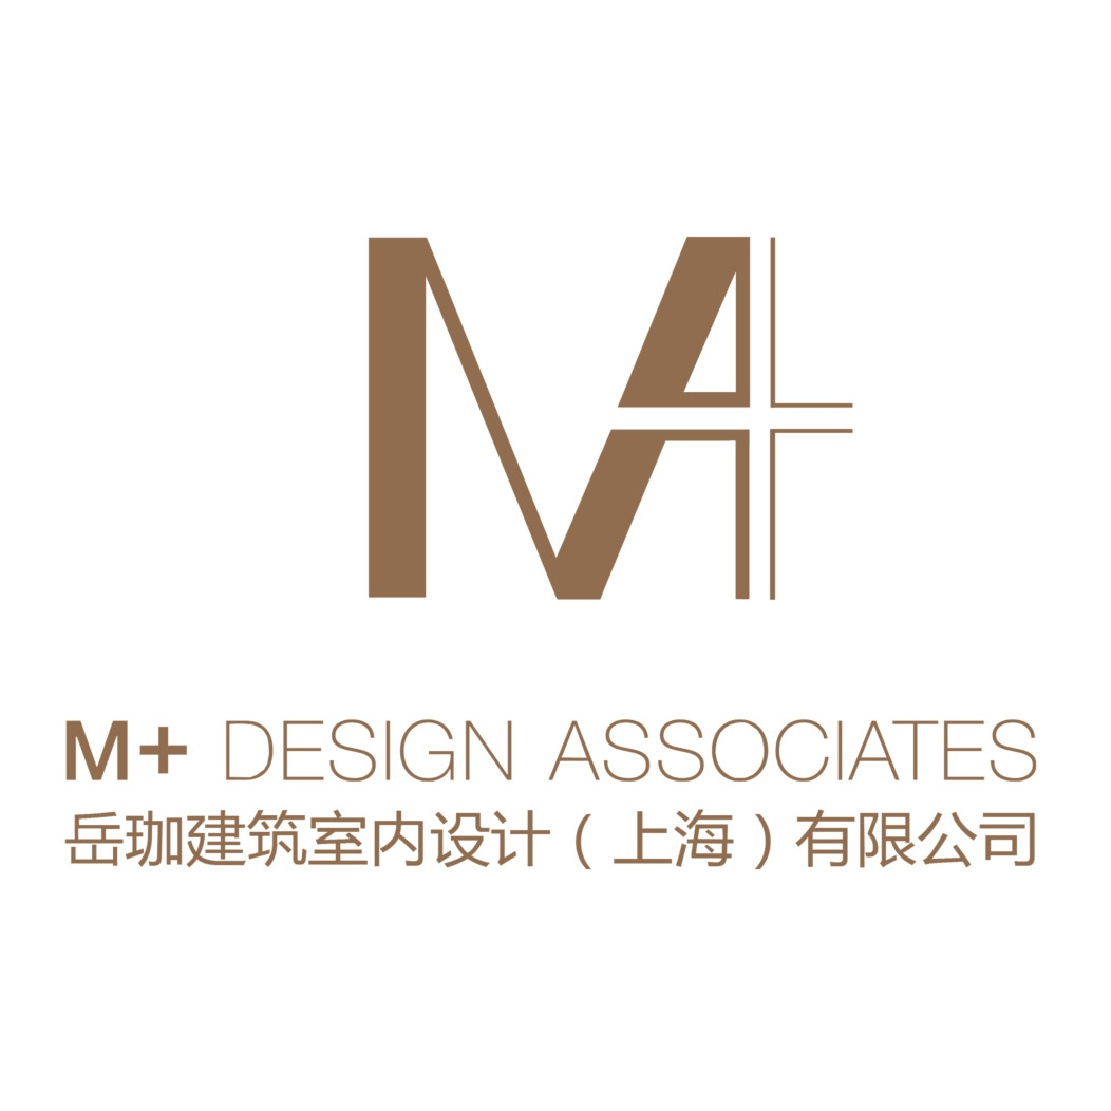 Company logo for M+ Design Associates Pte. Ltd.